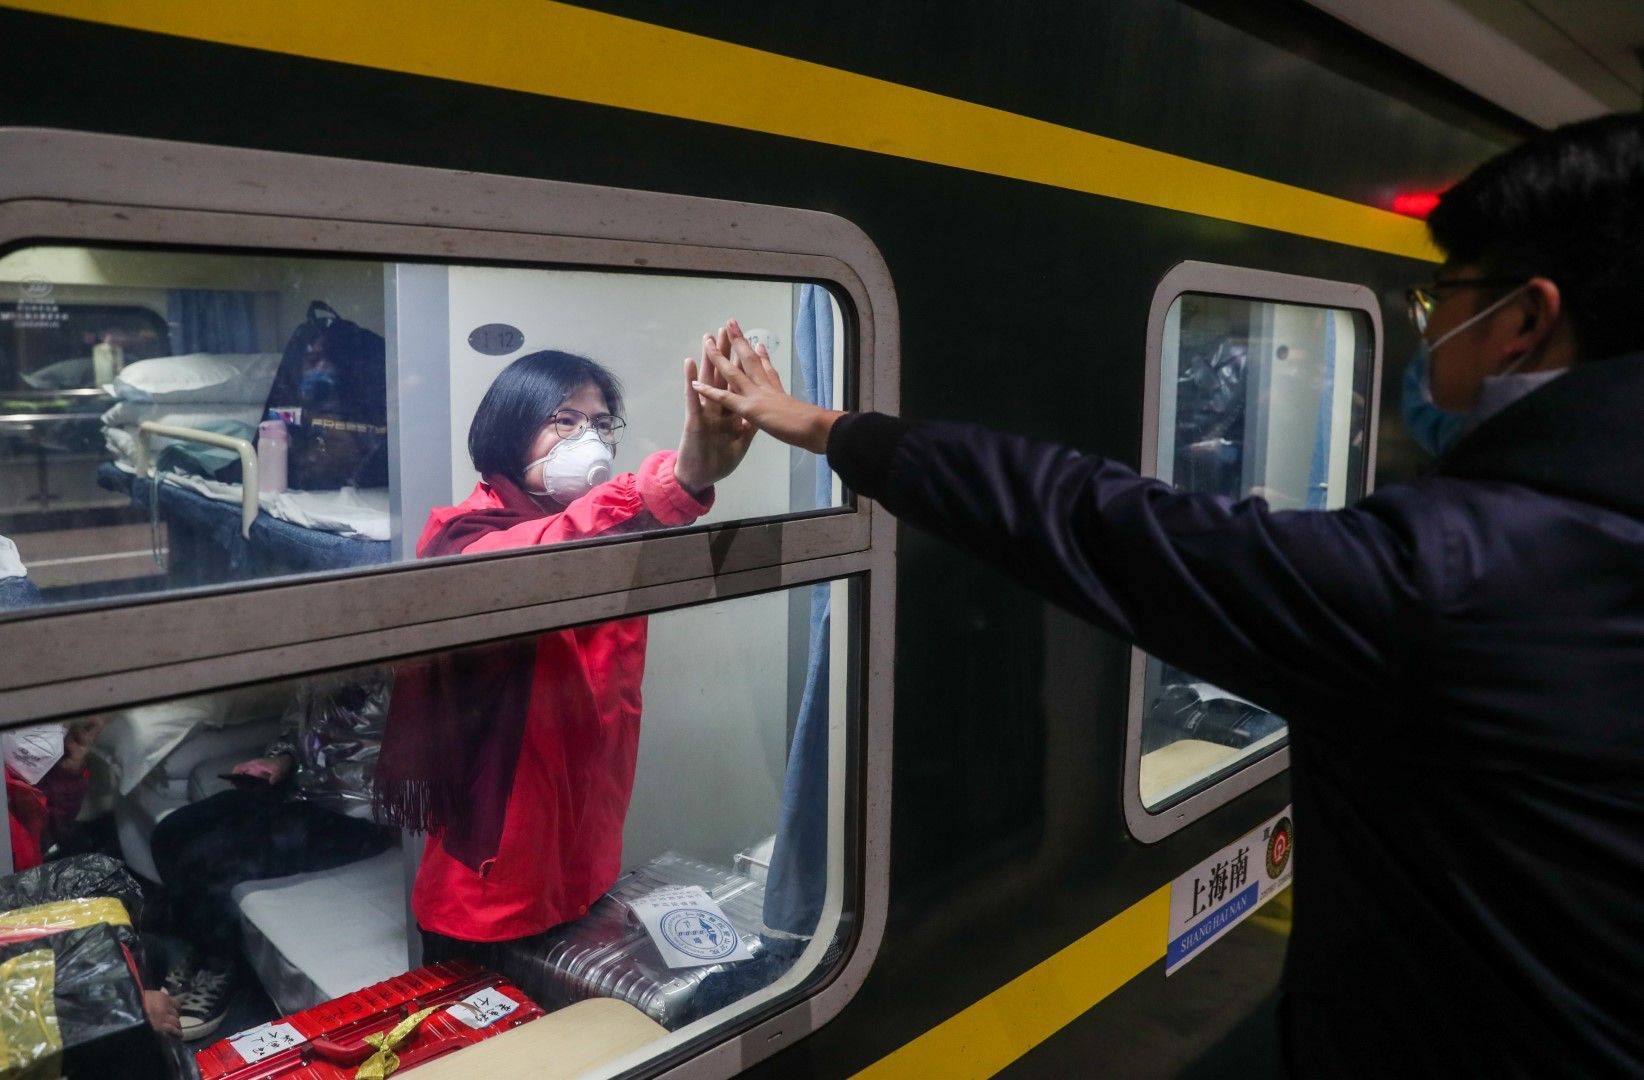 Двама съпрузи се разделят на гарата в Шанхай. Съпругата - медицинска сестра, заминава за Ухан, където се събират медицински екипи за борба с новия коронавирус